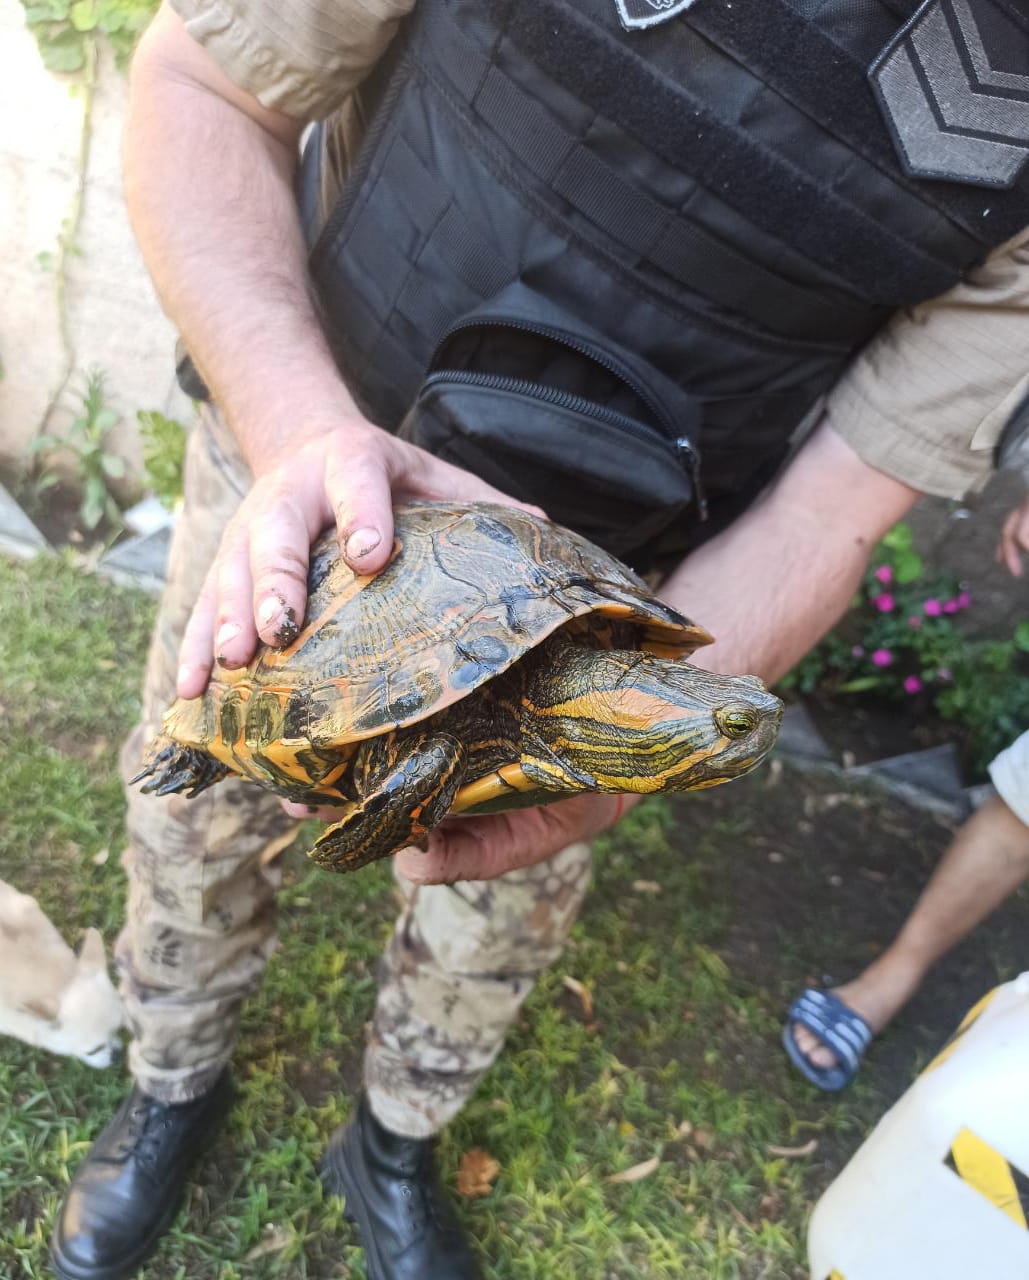 Distintos reptiles fueron rescatados por la Patrulla Ambiental en Córdoba